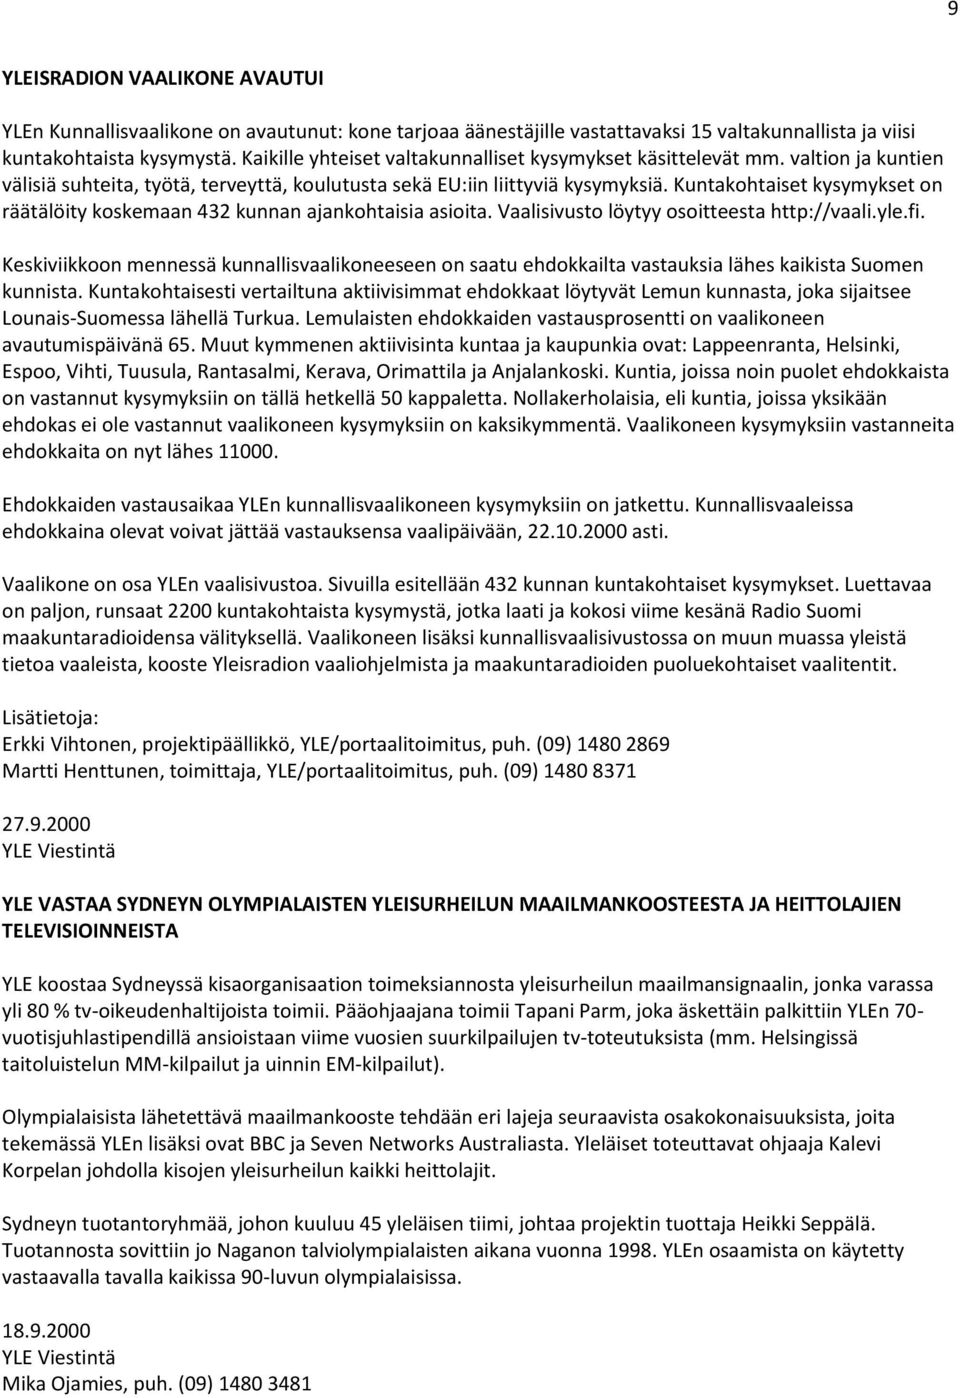 Kuntakohtaiset kysymykset on räätälöity koskemaan 432 kunnan ajankohtaisia asioita. Vaalisivusto löytyy osoitteesta http://vaali.yle.fi.